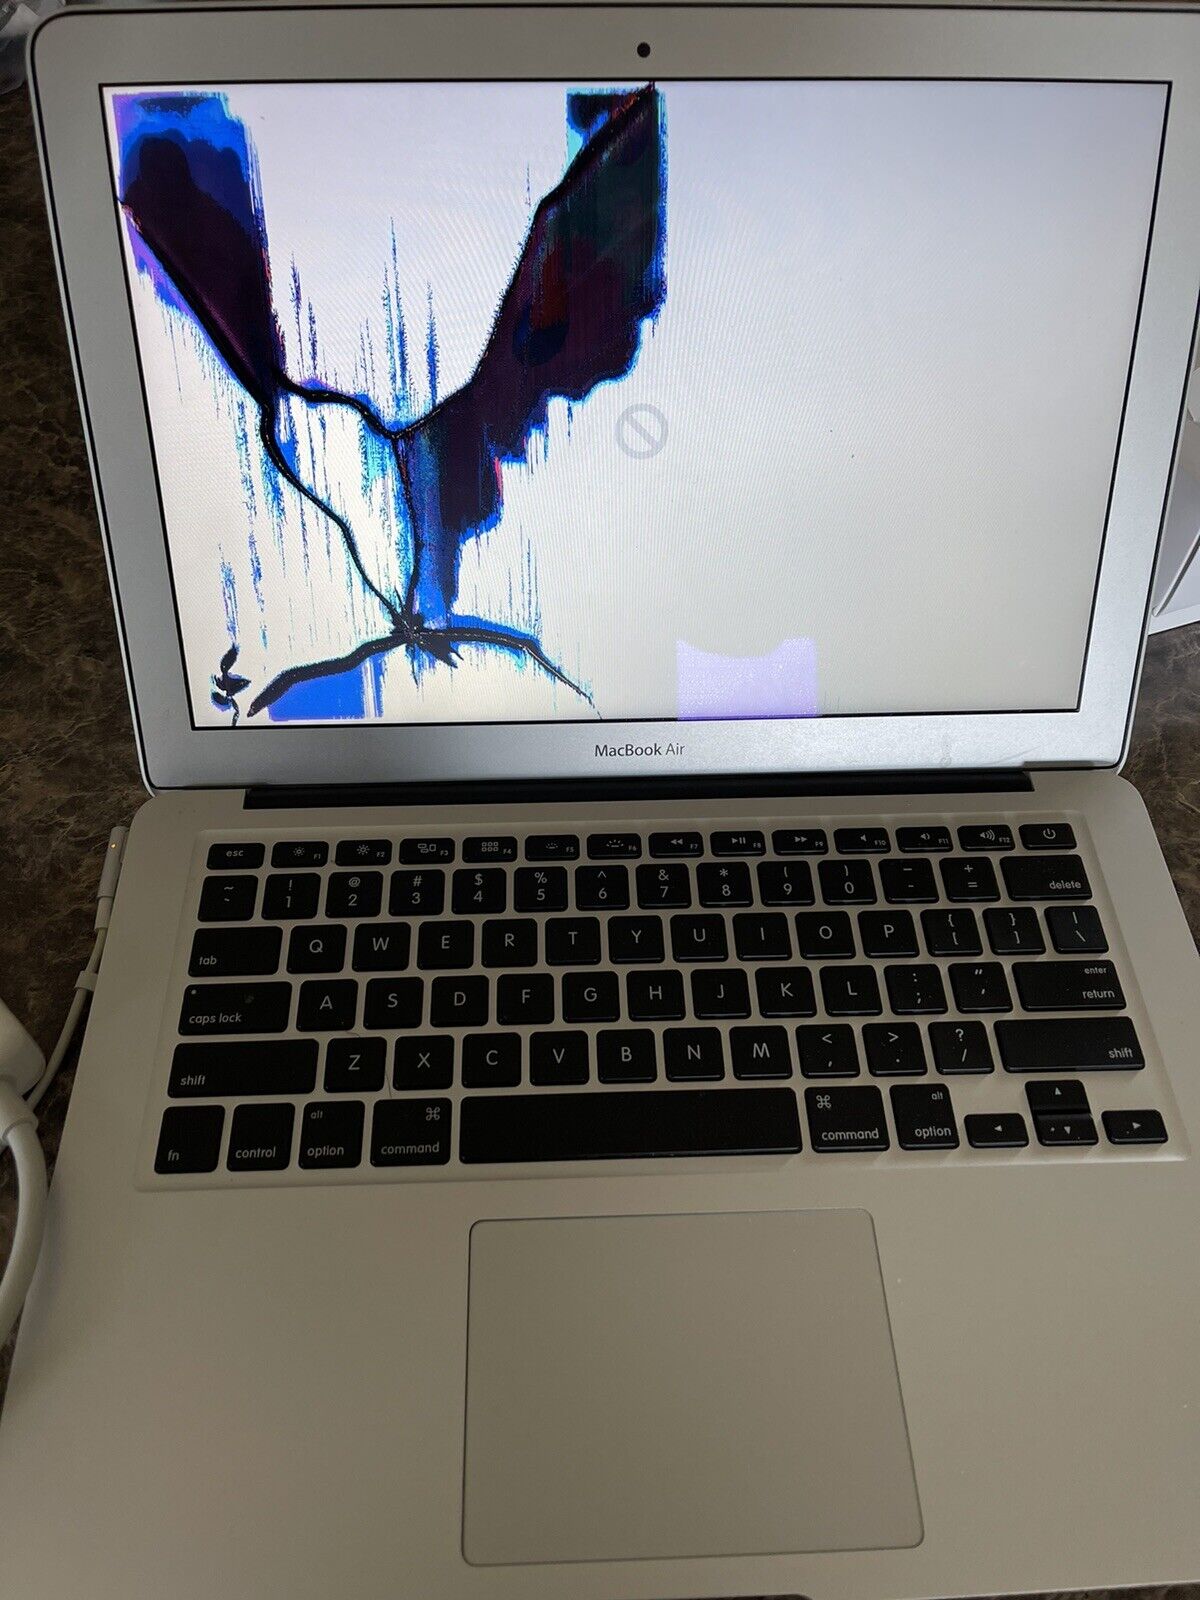 APPLE MacBook Air Model:A1369 4GB RAM INTEL i5 1.7GHZ 128GB HDD OS Does Not Work